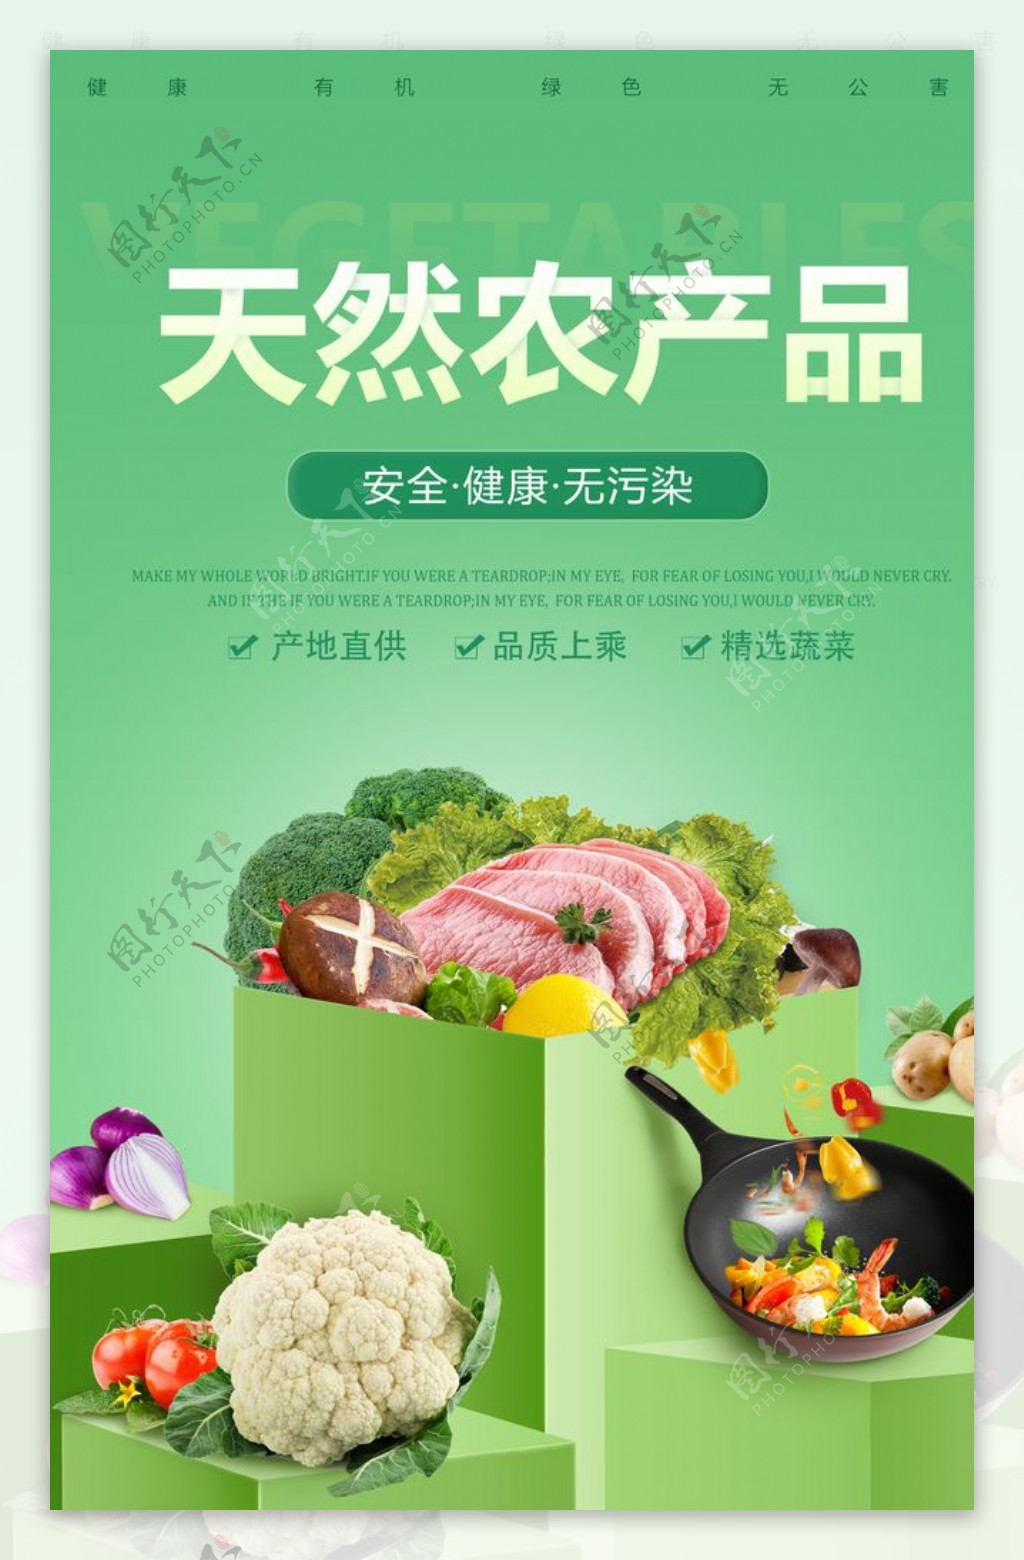 天然农产品蔬菜活动海报素材图片